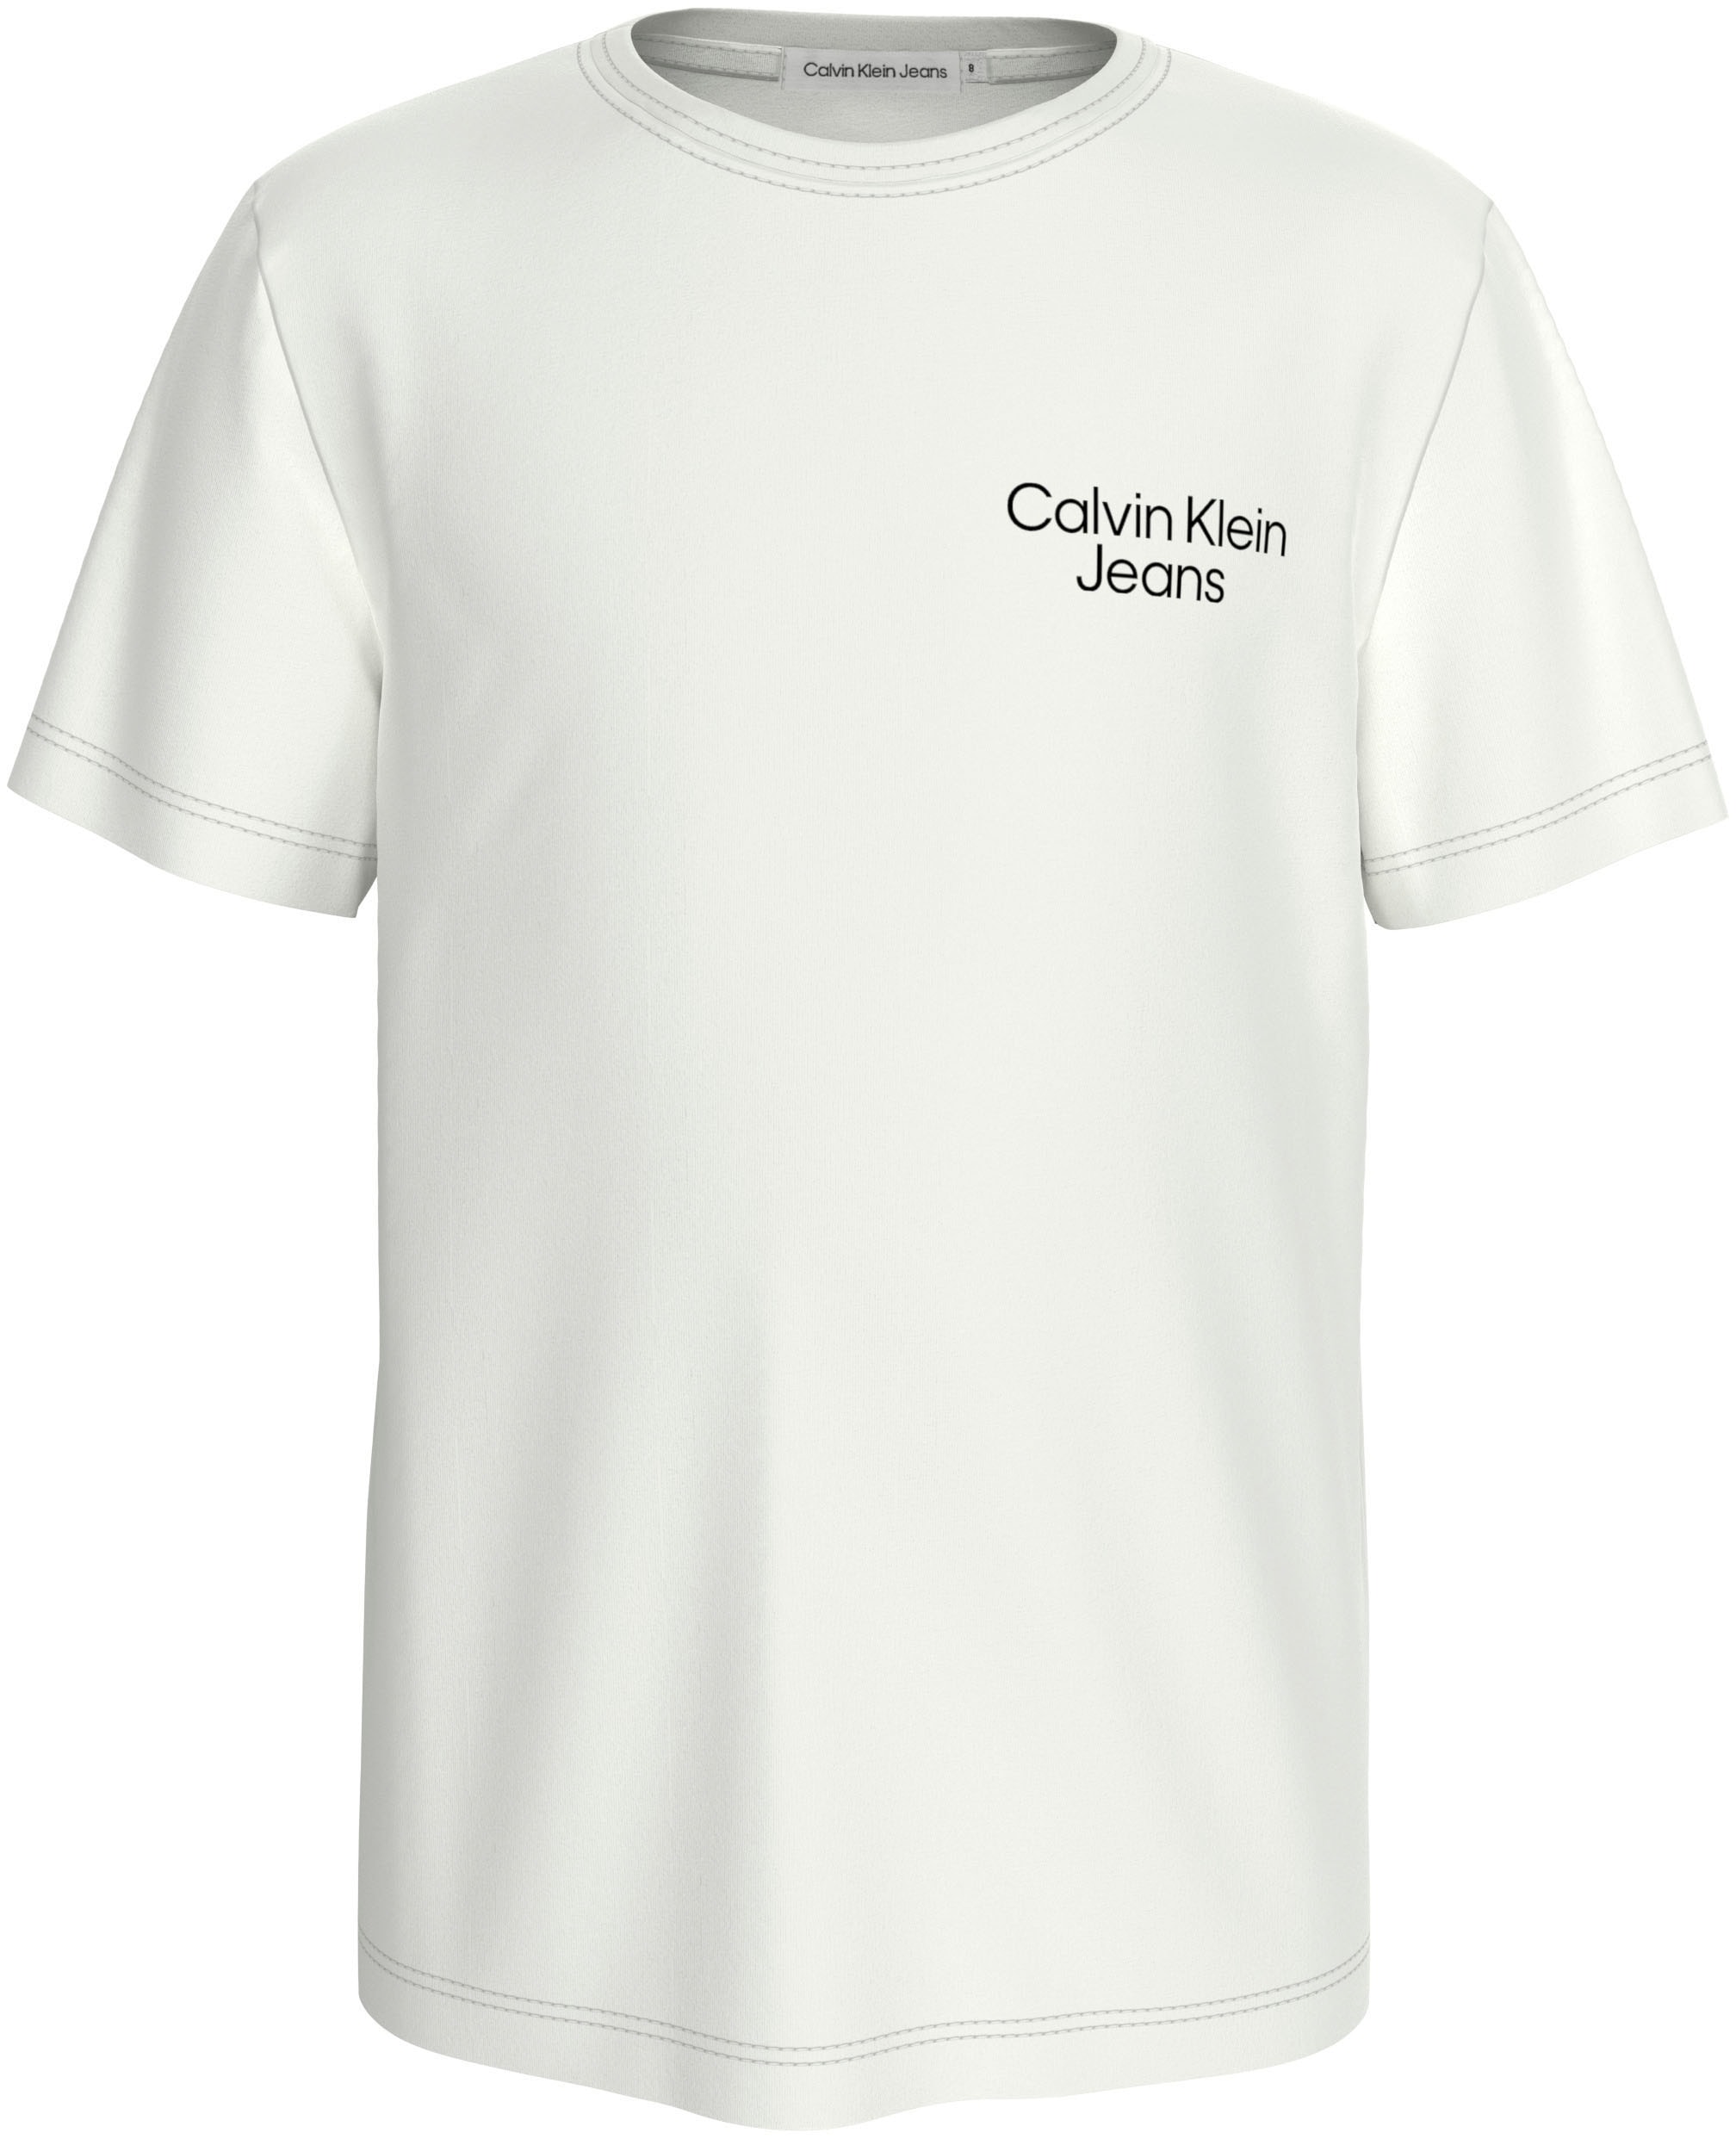 T-Shirt, für Kinder bis 16 Jahre und mit Calvin Klein Logoschriftzug